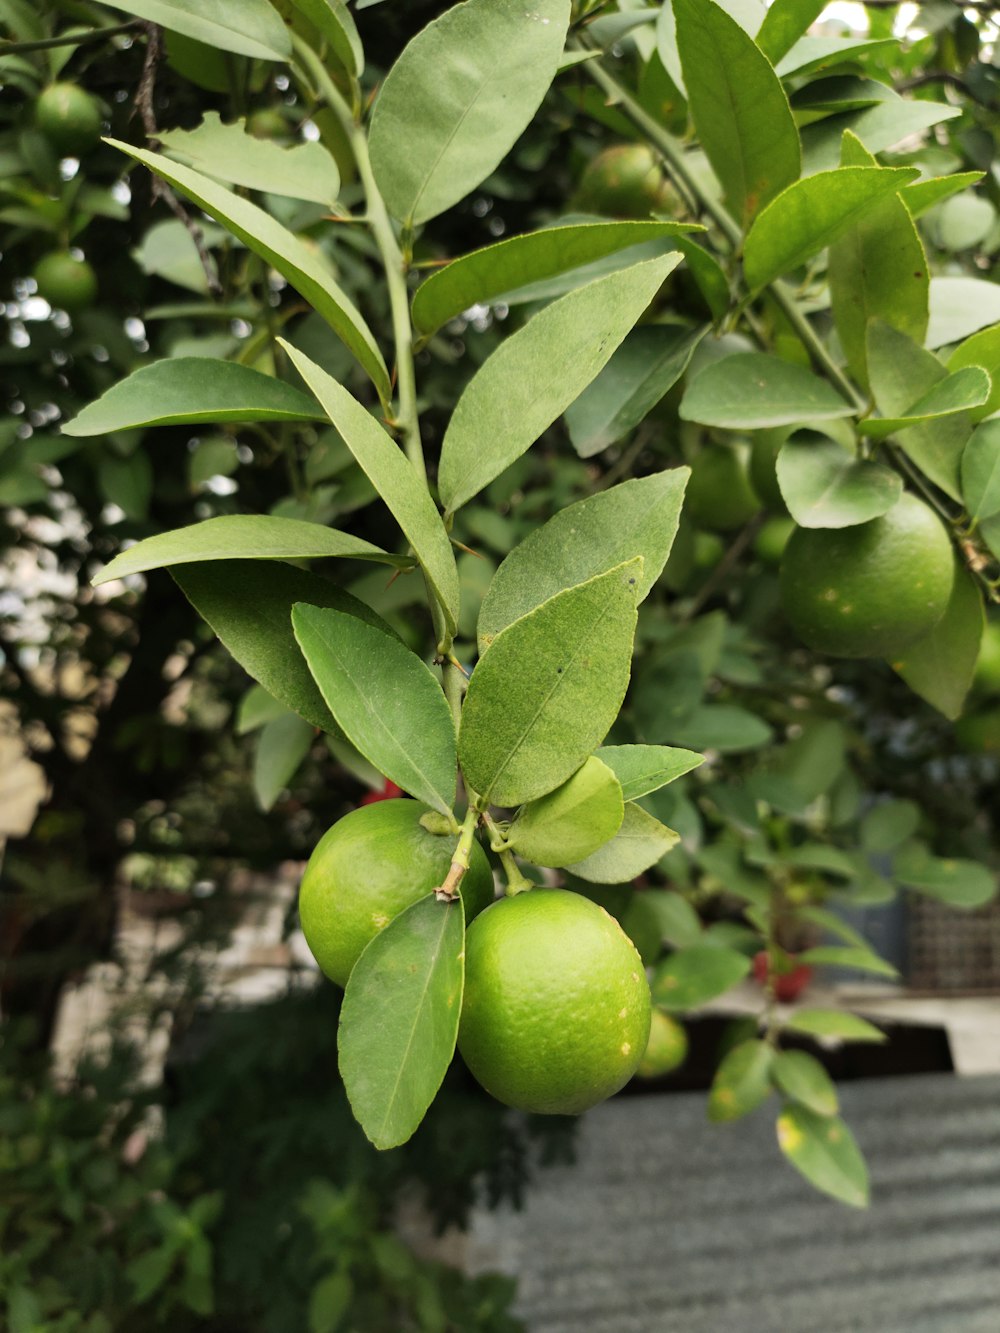 나무에 매달린 둥근 녹색 감귤류 과일